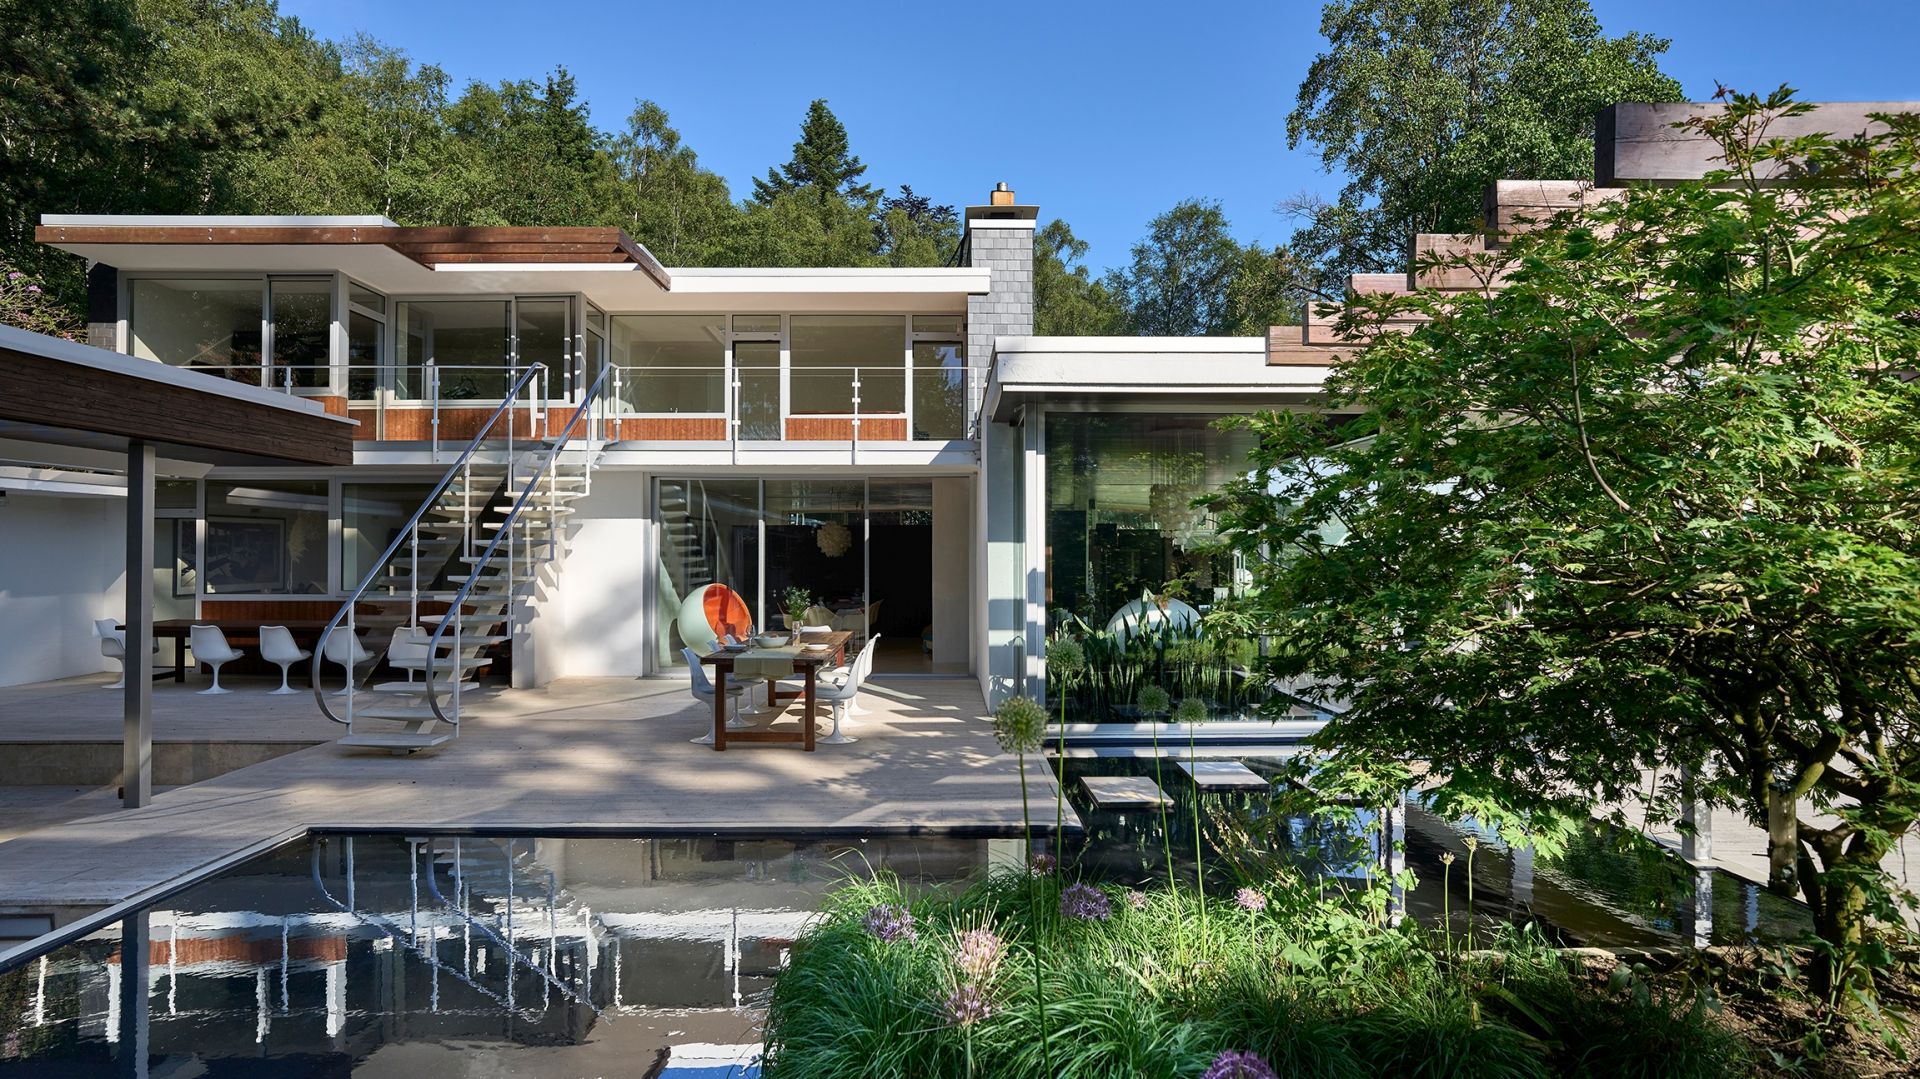 Ten dom to architektoniczna perełka! Modernistyczny projekt z lat 60. zyskał nowe życie!